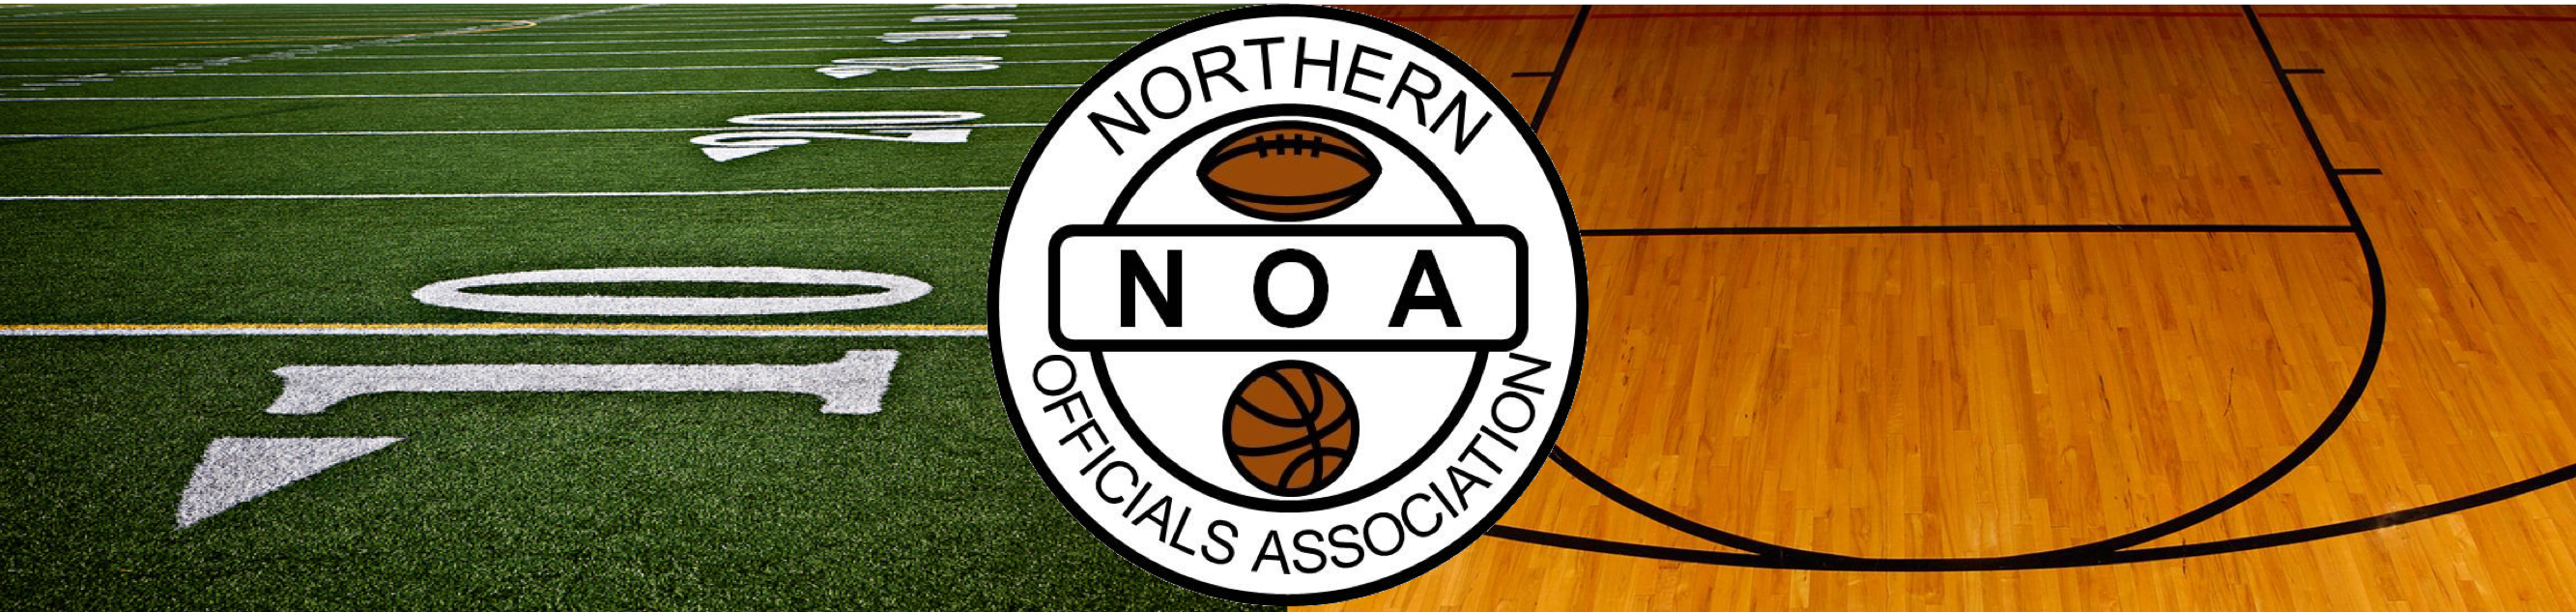 Northern Officials Association